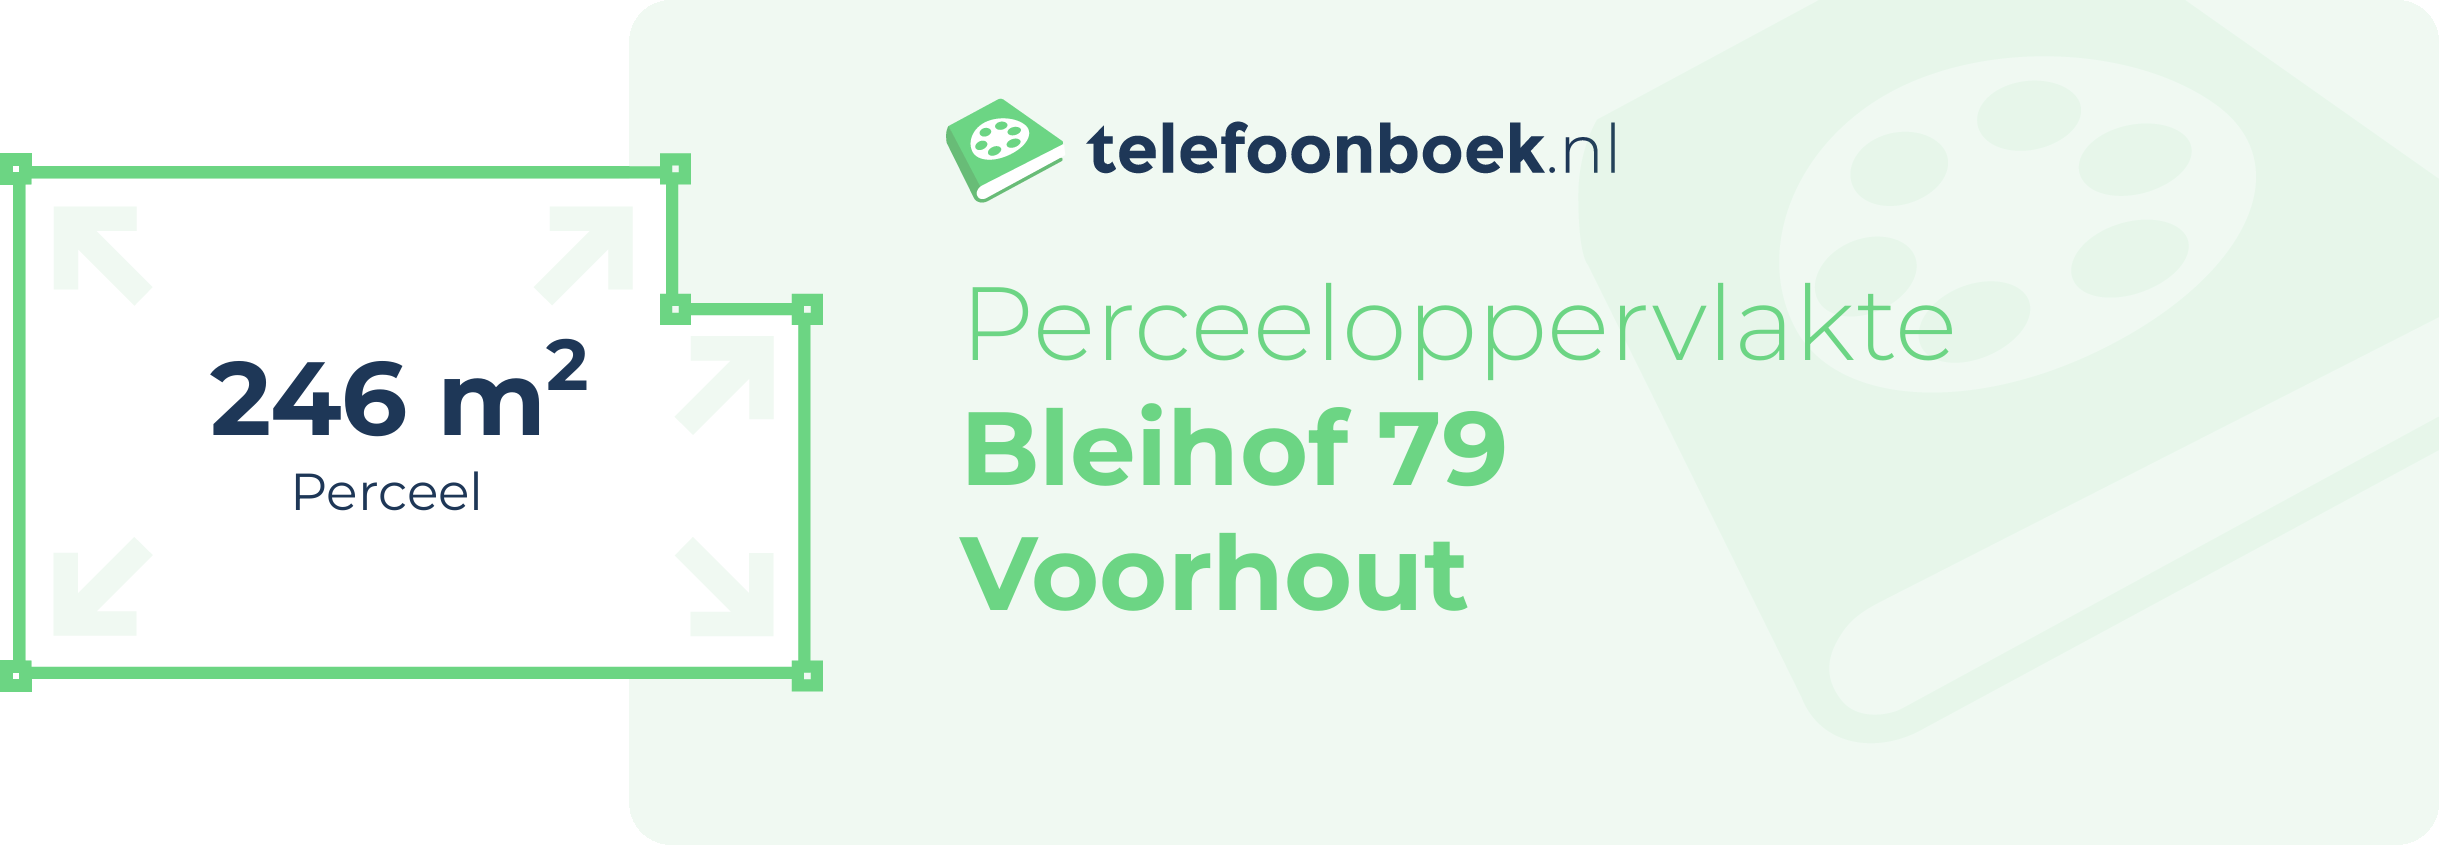 Perceeloppervlakte Bleihof 79 Voorhout